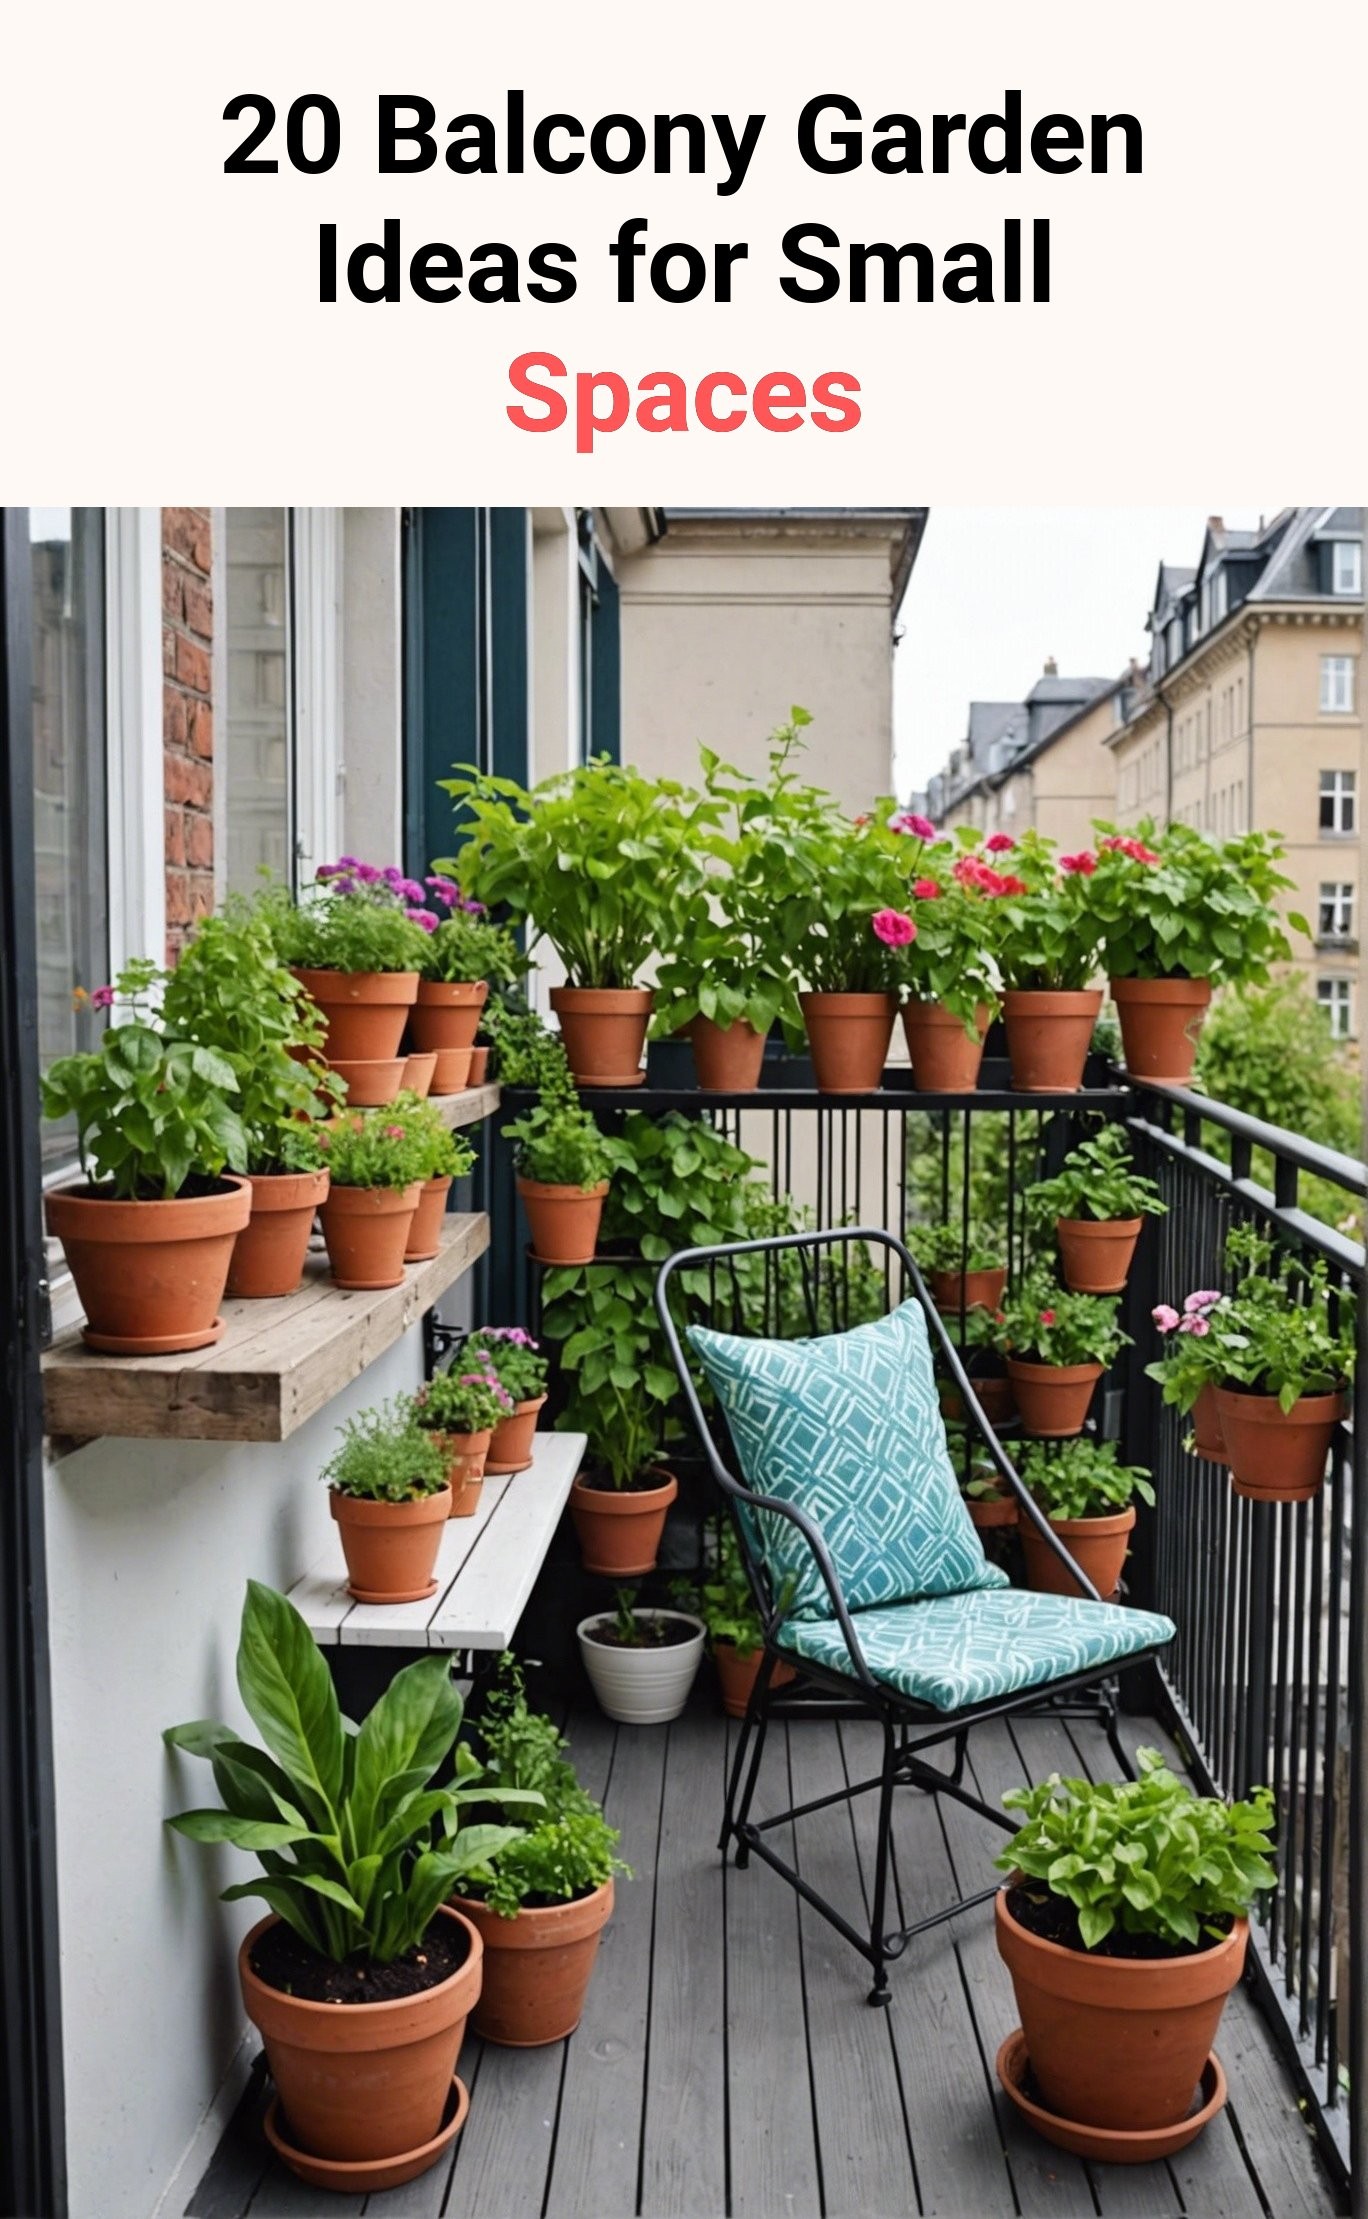 20 Balcony Garden Ideas for Small Spaces